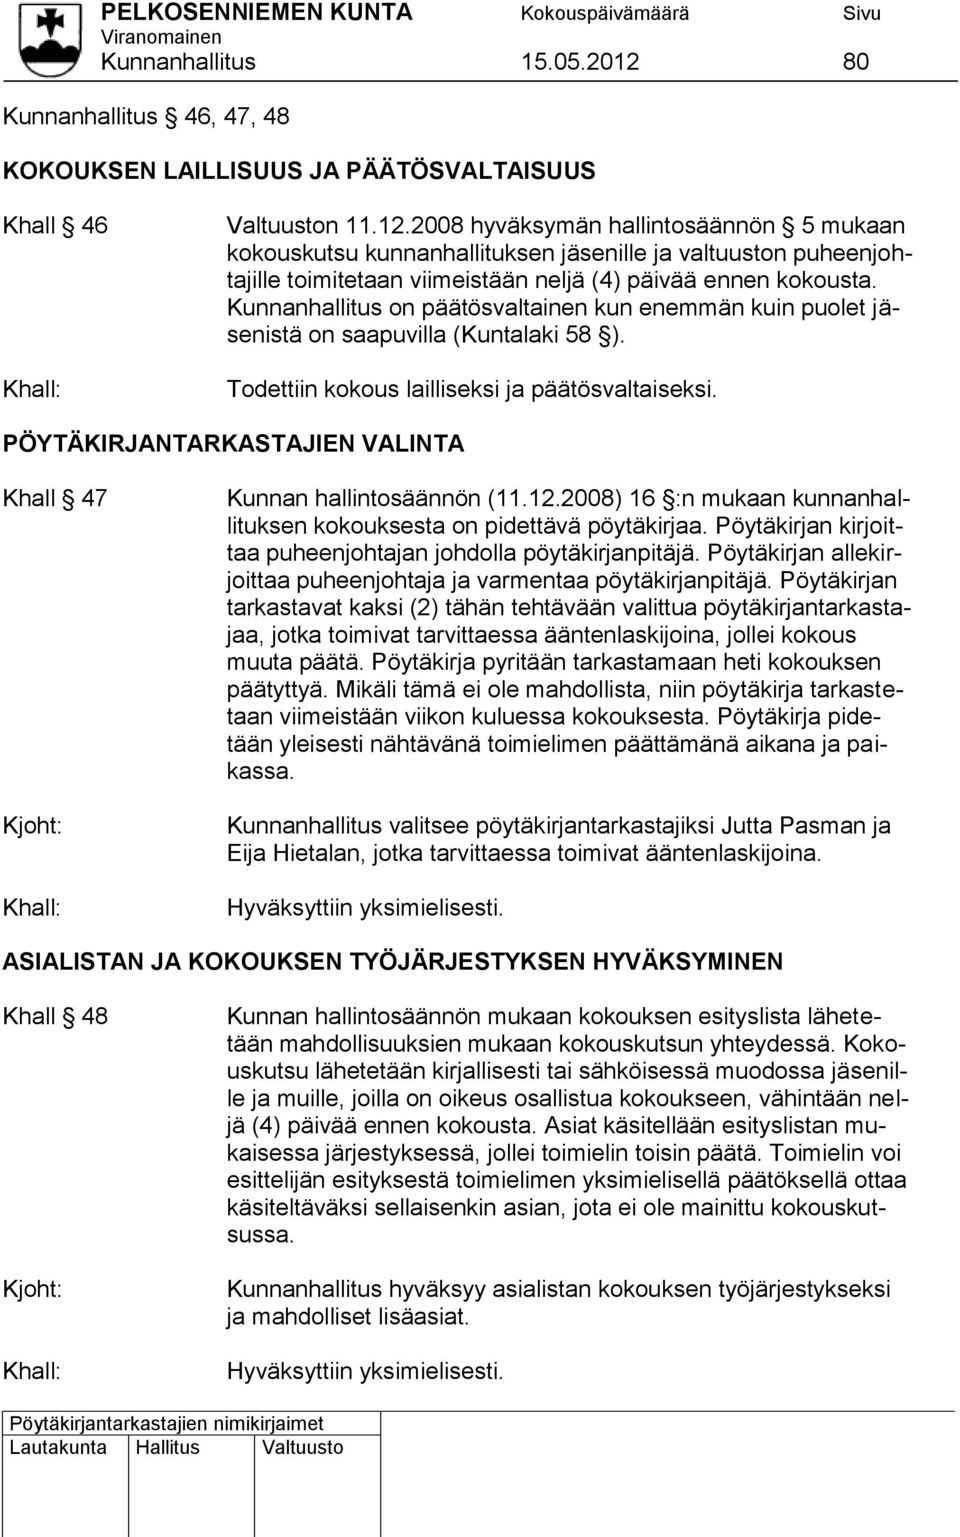 PÖYTÄKIRJANTARKASTAJIEN VALINTA Khall 47 Kunnan hallintosäännön (11.12.2008) 16 :n mukaan kunnanhallituksen kokouksesta on pidettävä pöytäkirjaa.